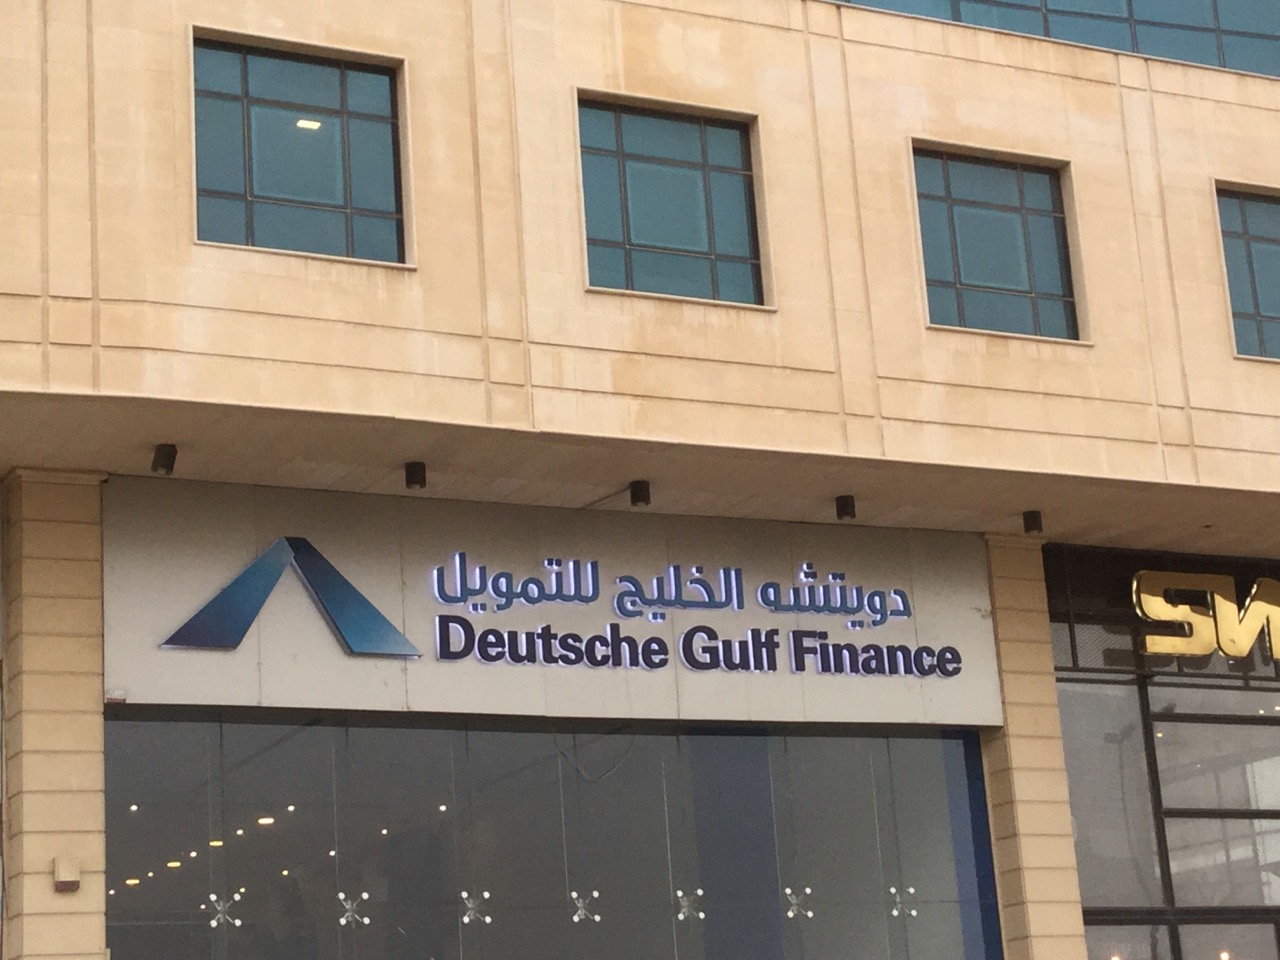 Deutsche Gulf Finance